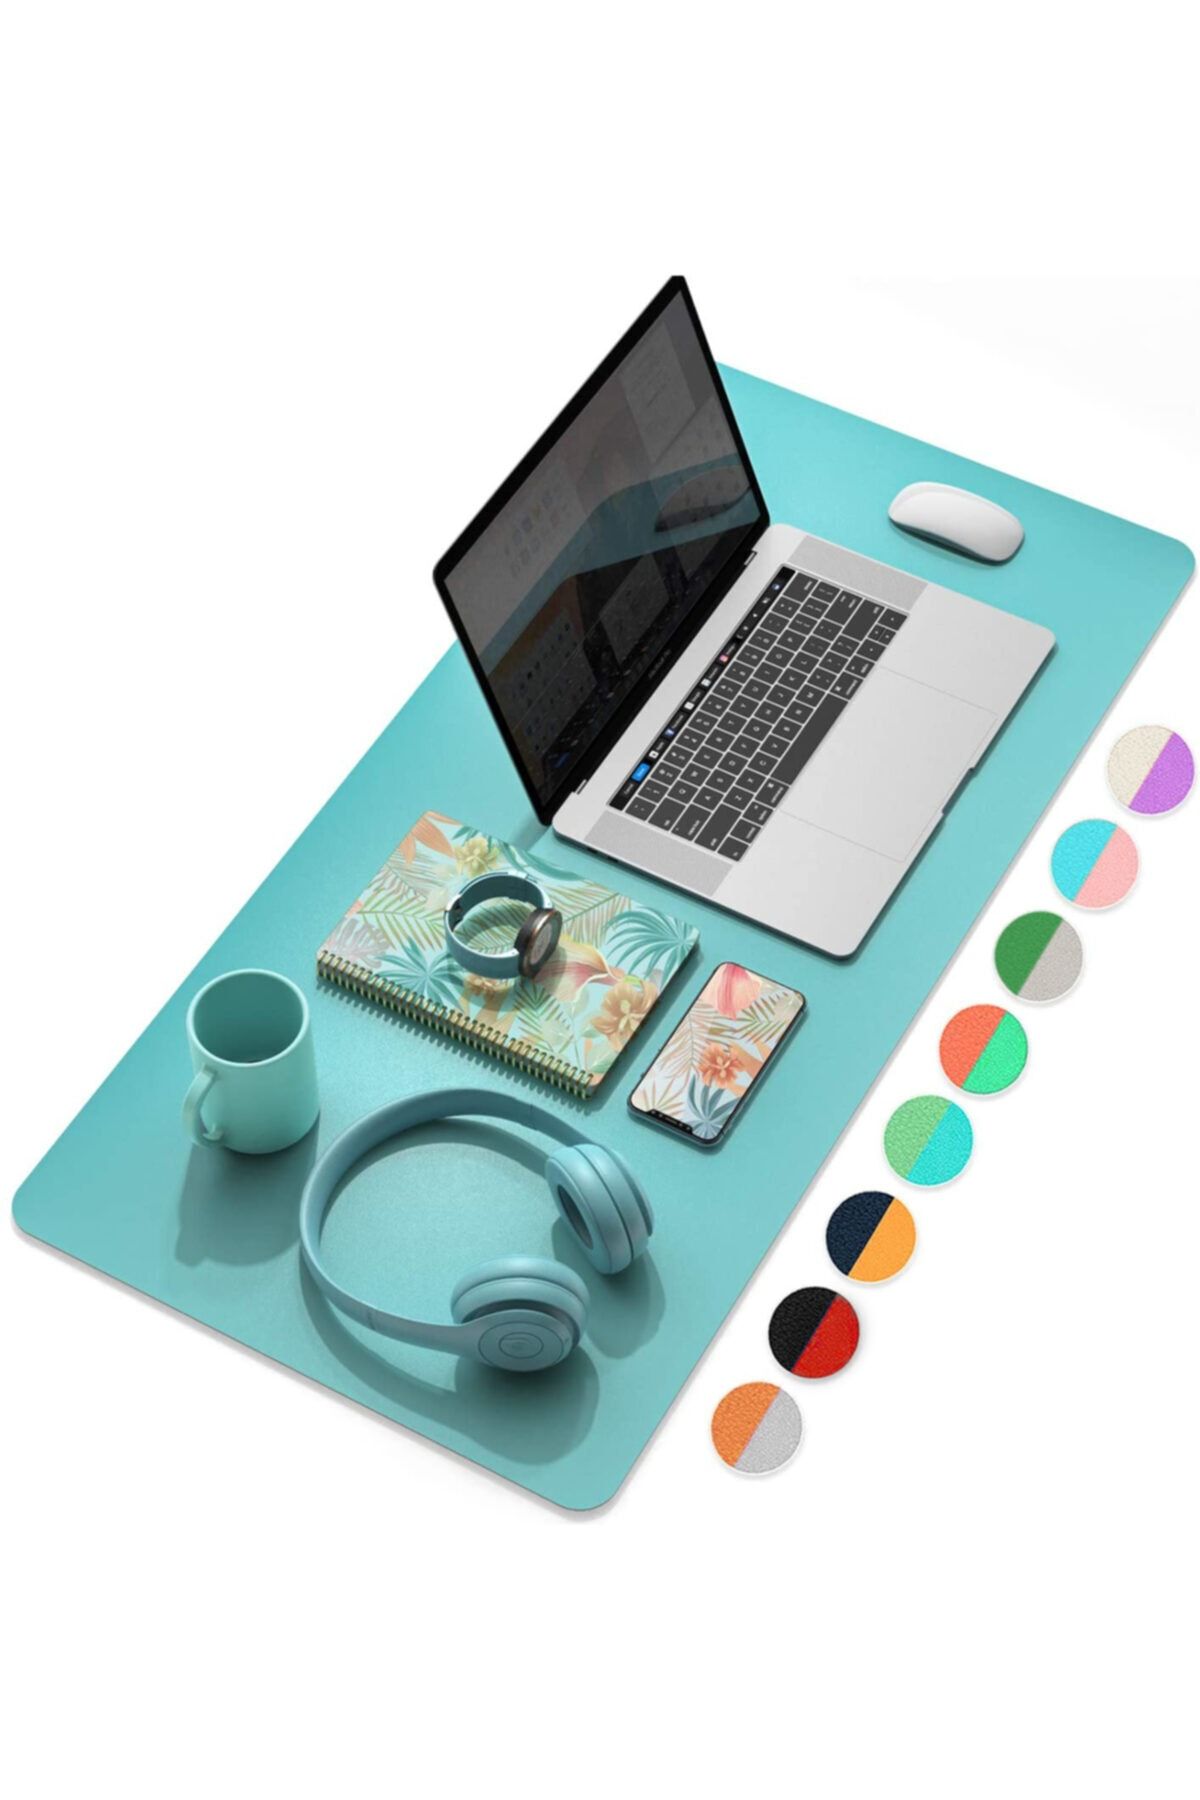 Xrades Çift Renk Deri Mousepad Laptop Bilgisayar Için 80x40 Cm Turkuaz Ve Açık Yeşil